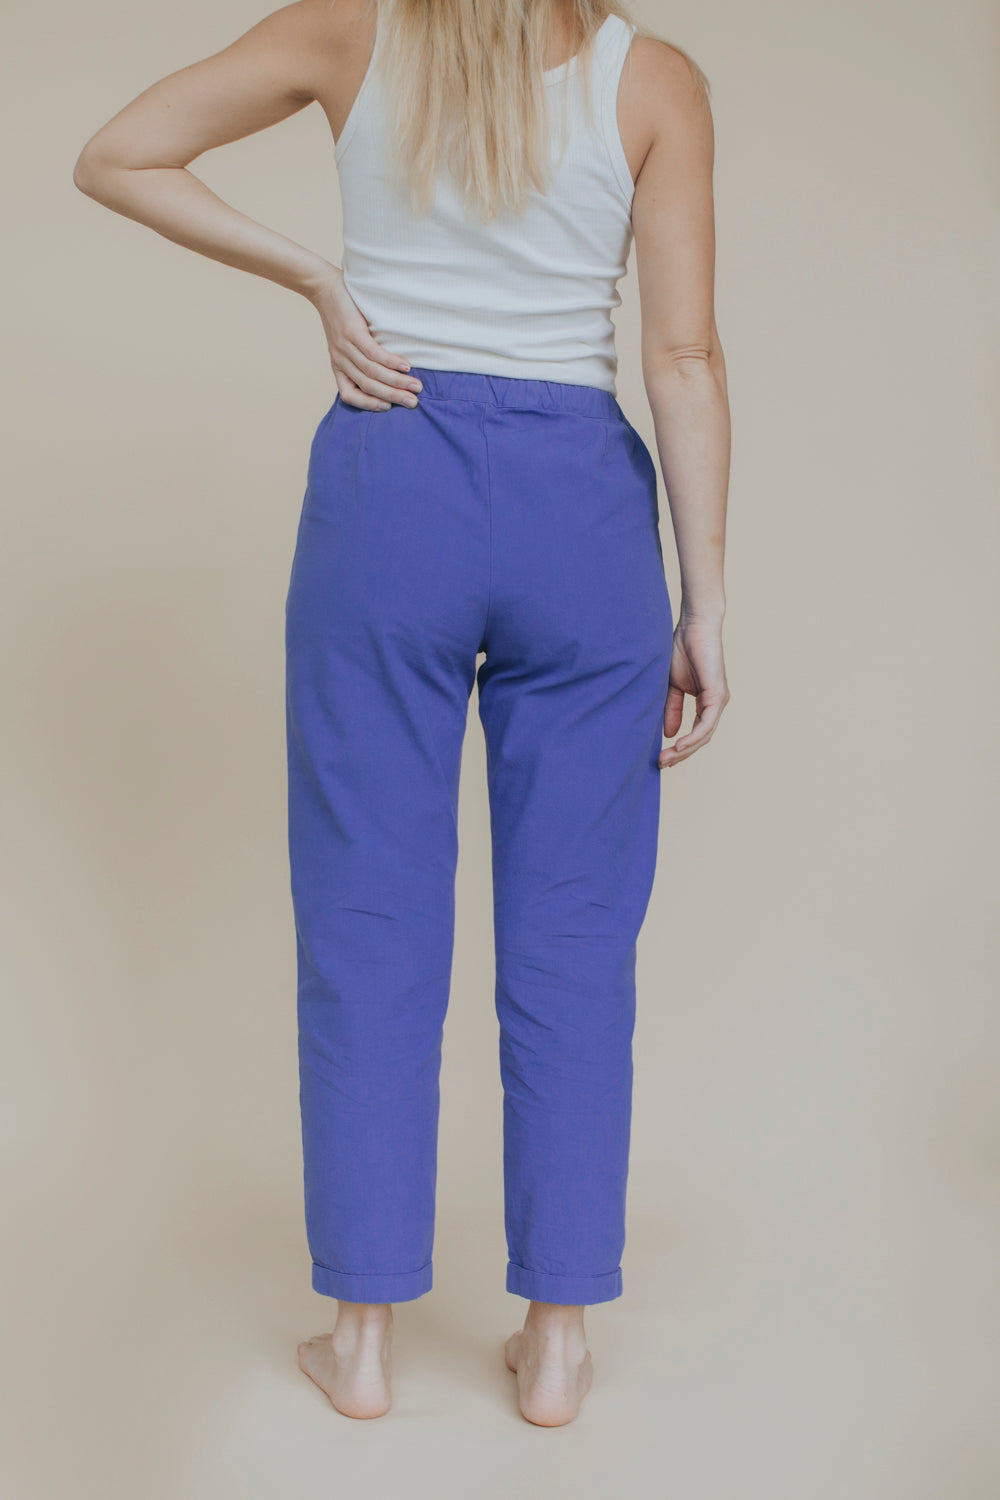 the dão store - Pants Eleni - Soft Cobalt - Pants | Jumpsuits